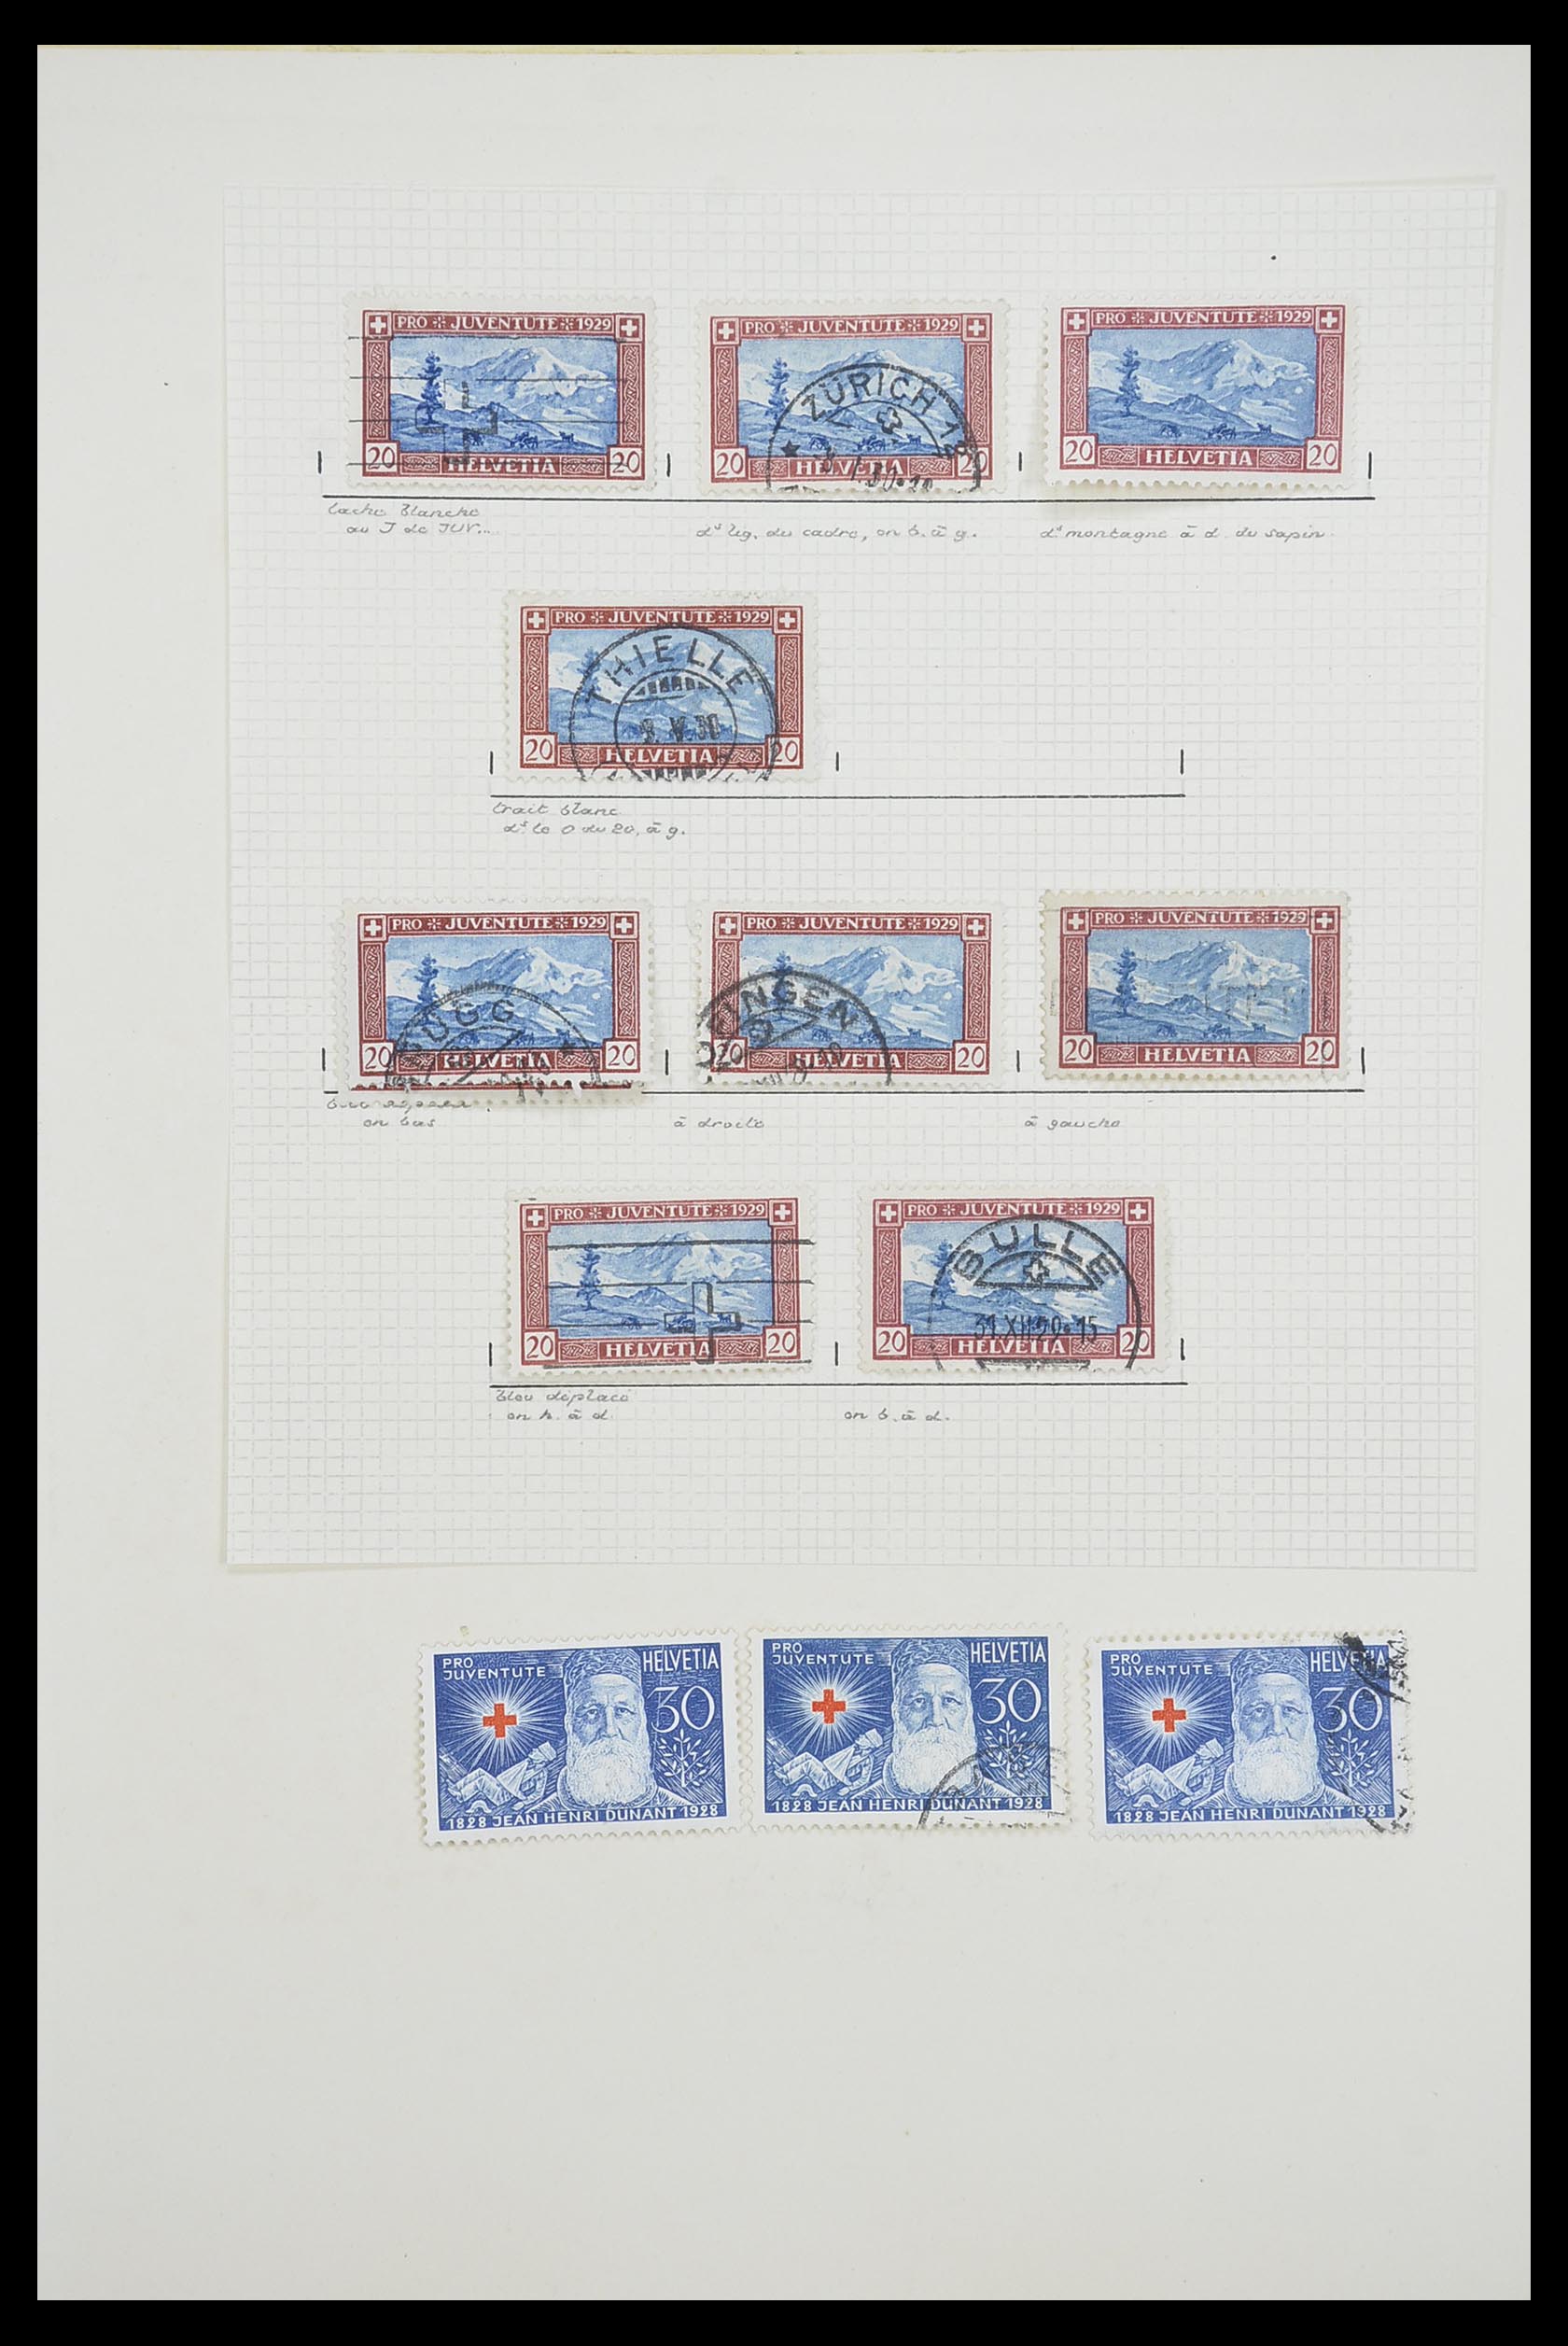 33926 054 - Postzegelverzameling 33926 Zwitserland uitzoekpartij 1850-1997.